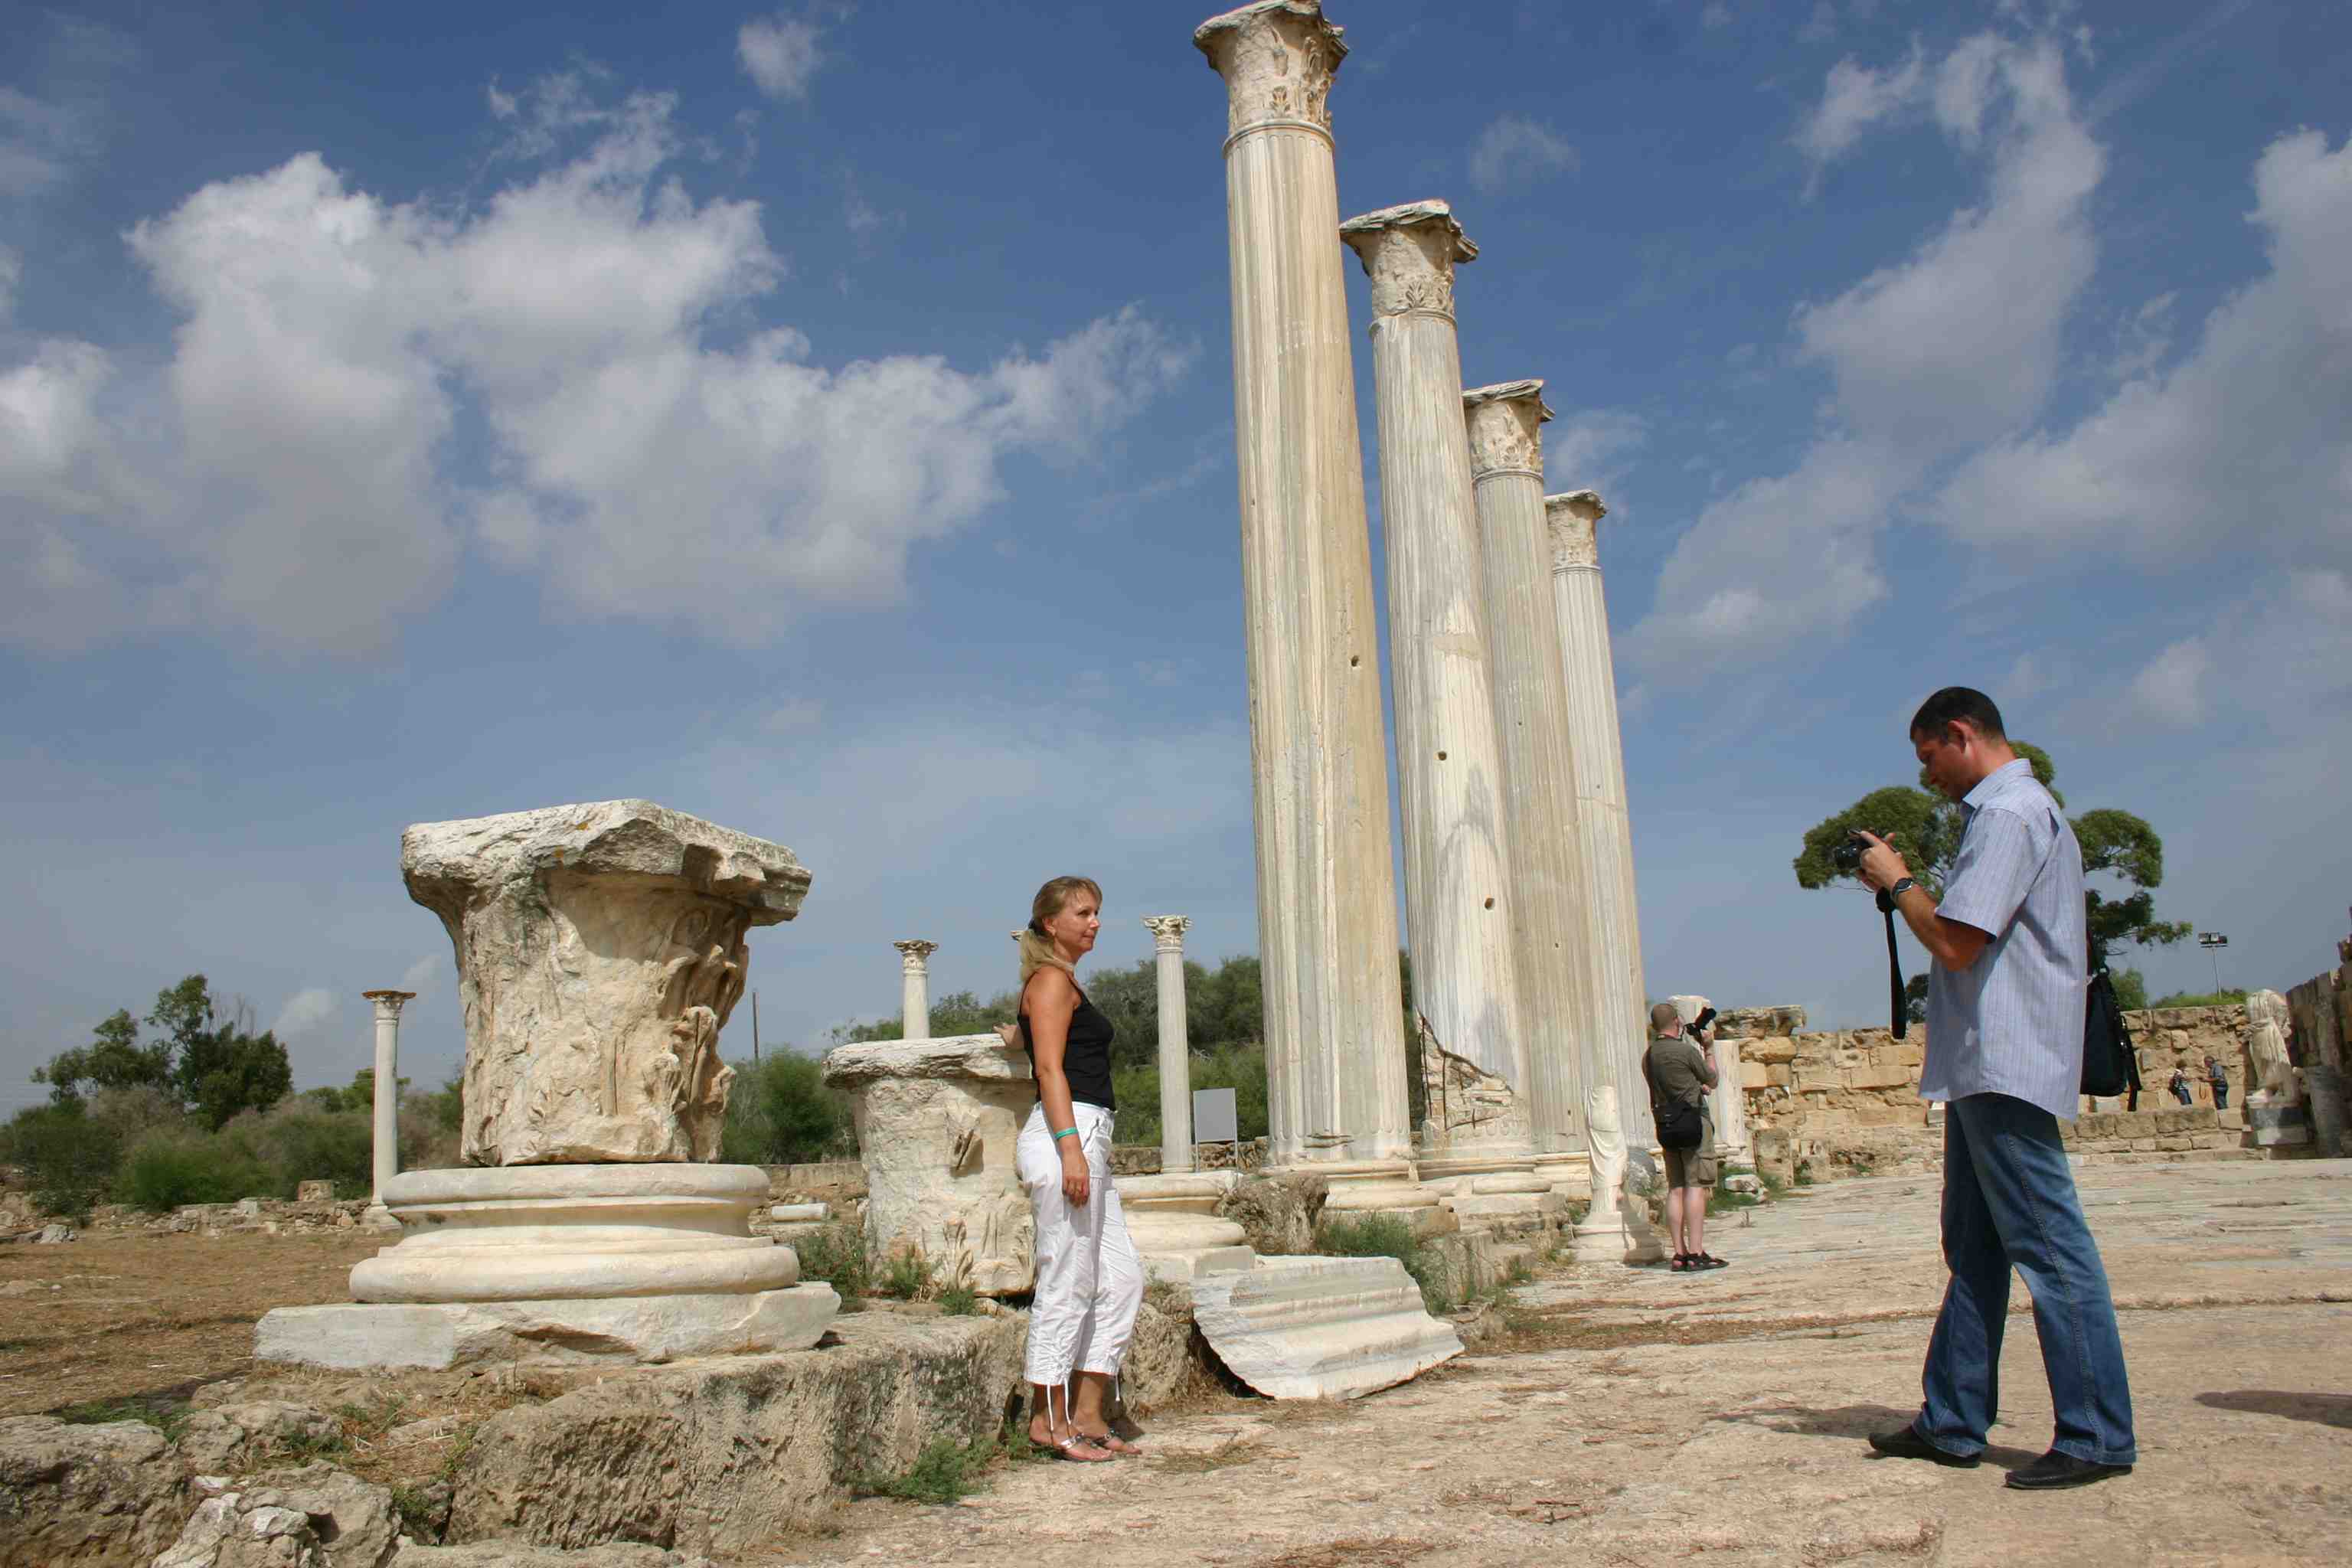 auf Nord-Zypern: Heterosexuelle Touristen bewegen sich frei und unverkrampft ;-) Säulen der antiken Stätten von Salamis auf Nord-Zypern